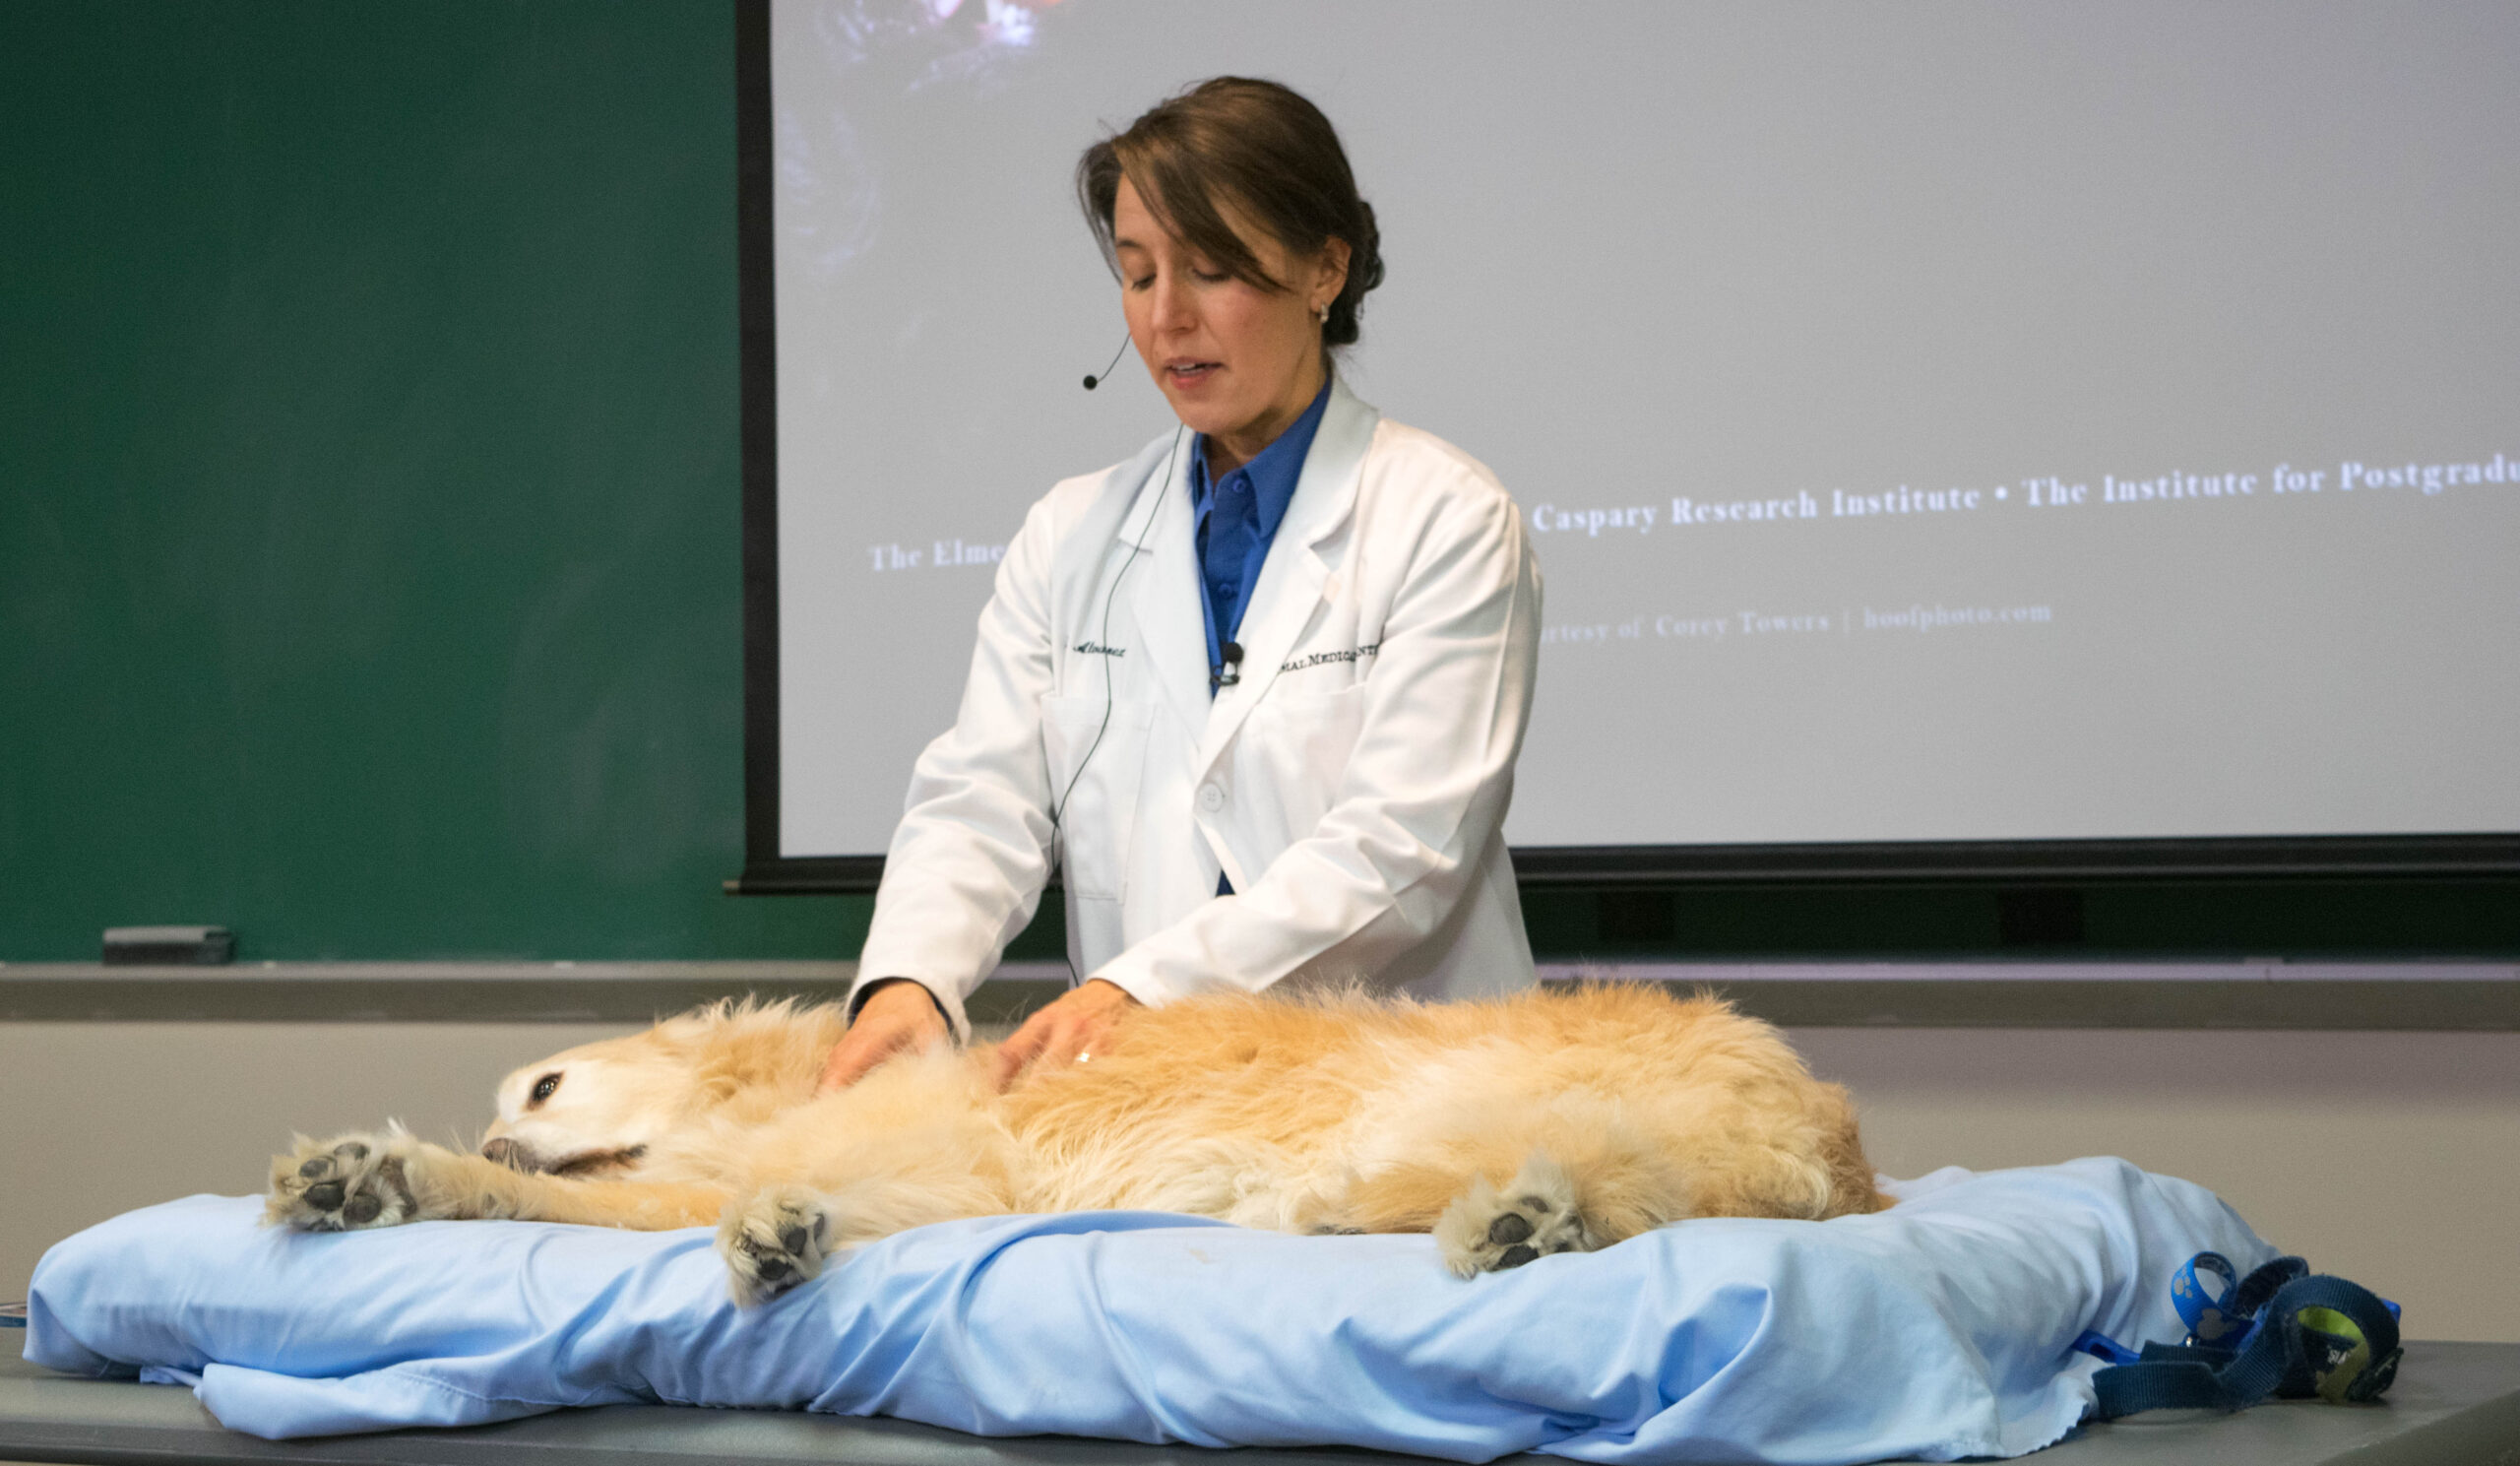 Dr. Alvarez massaging golden retriever dog